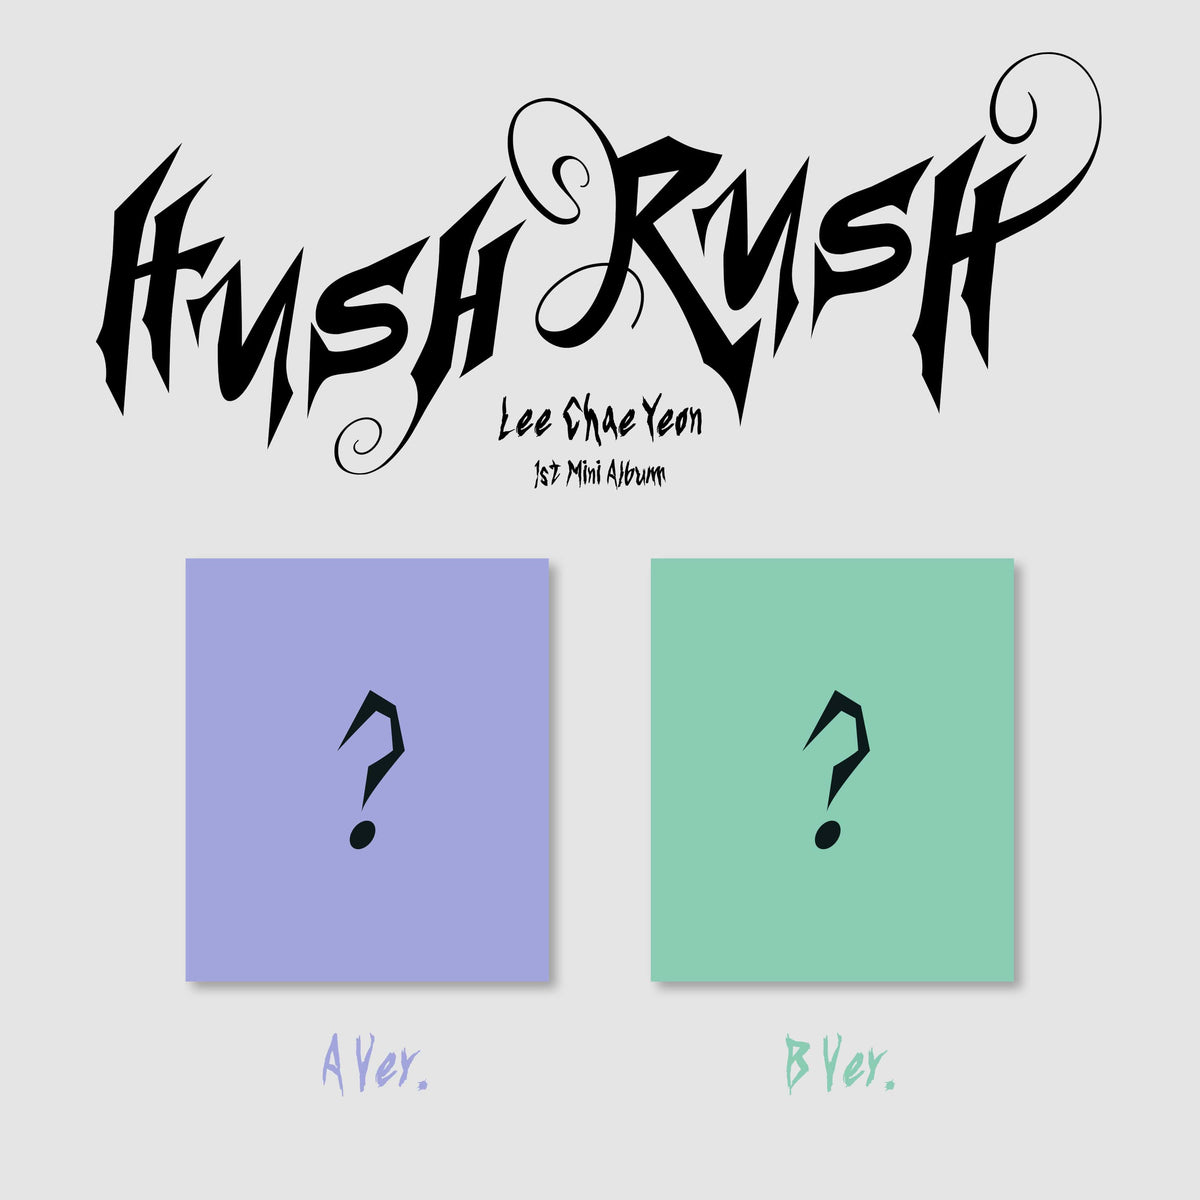 LEE CHAEYEON - 1st Mini Album [HUSH RUSH]